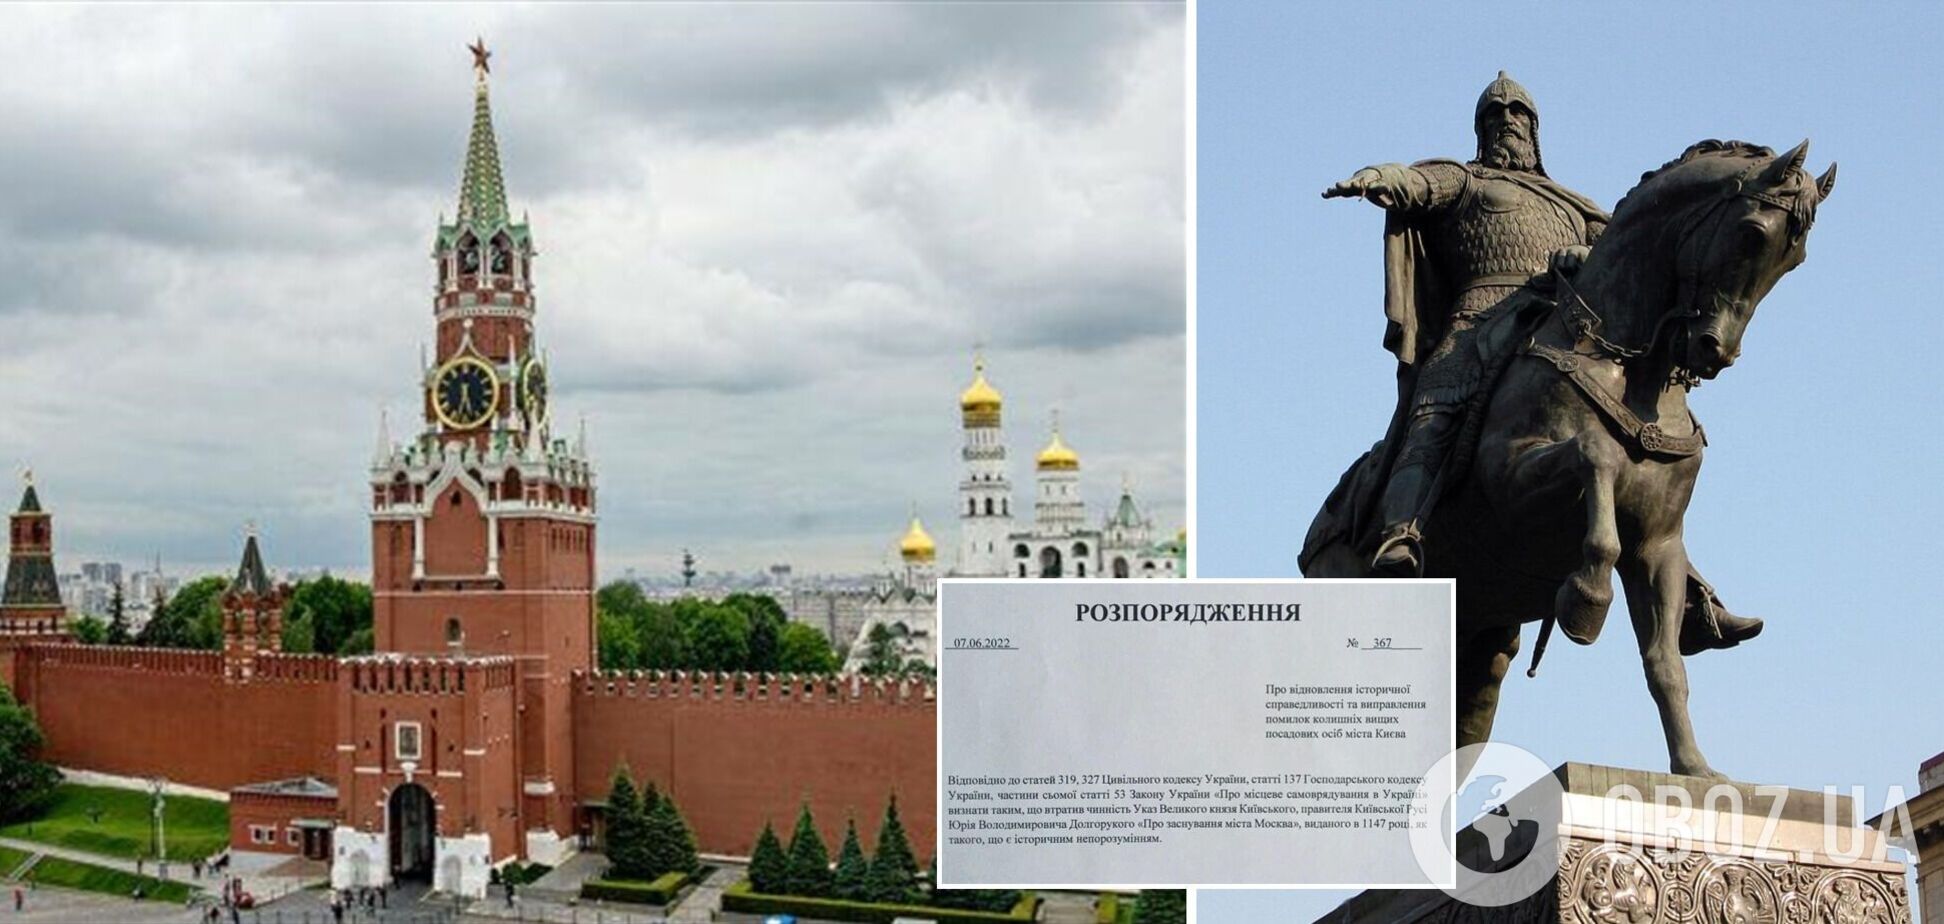 'Историческое недоразумение': в сети предложили отменить указ Долгорукого об основании Москвы